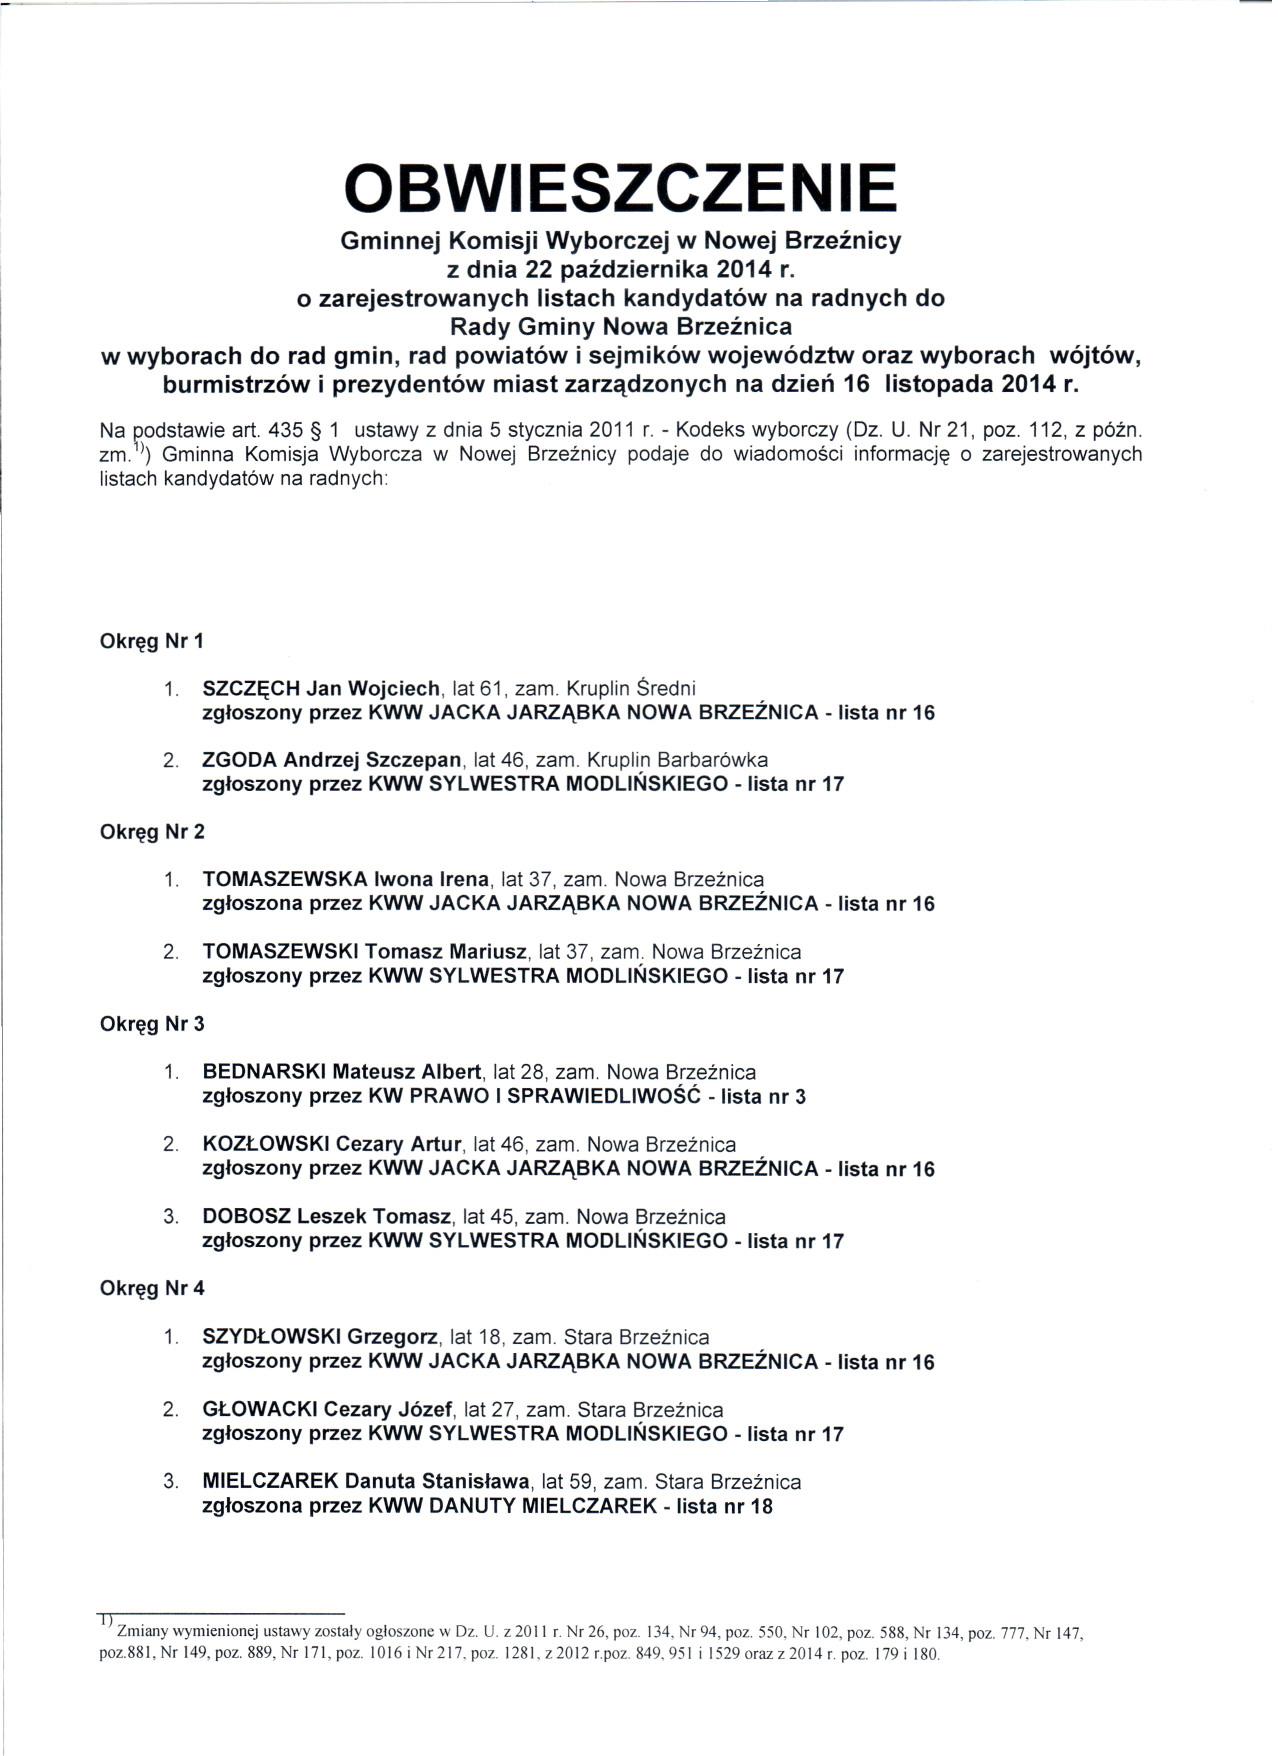          obwieszczenie_gminnej_komisji_o_zarejestrowanych_listach_na_kandydatow_na_radnych_1.jpg